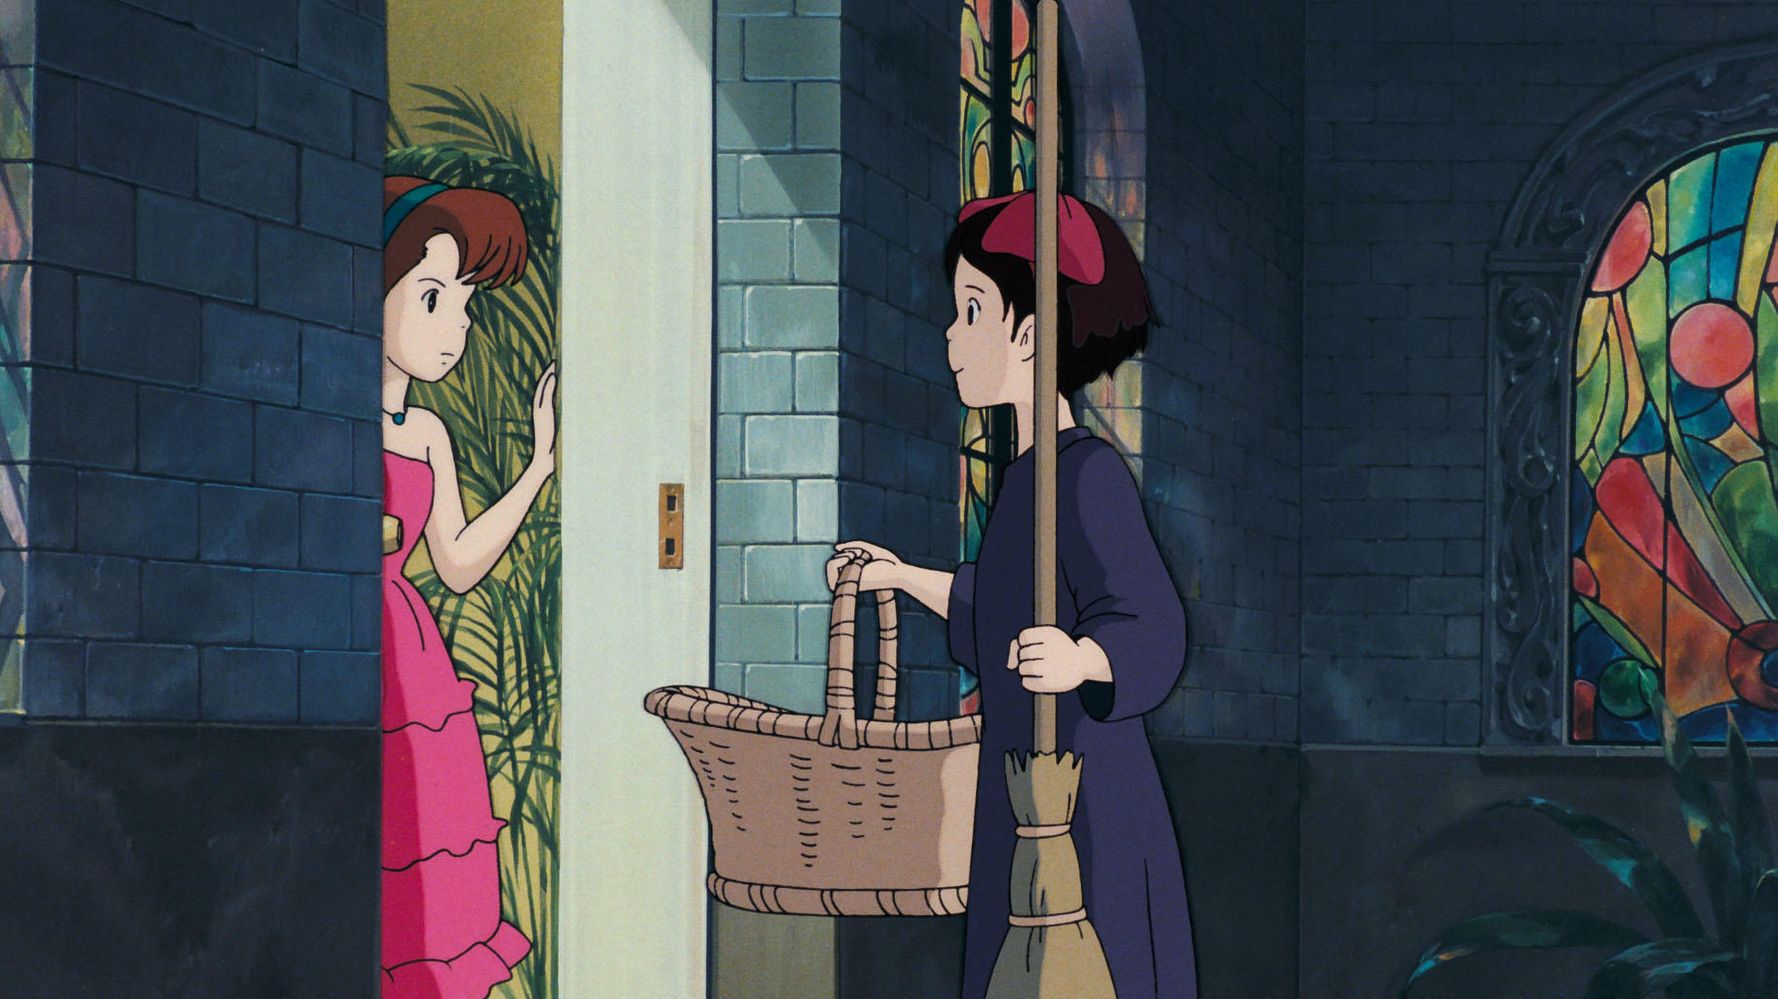 『魔女の宅急便』のニシンパイ嫌がる女の子。大人になったら見方が変わる？ 宮崎駿さんの考えが深かった。